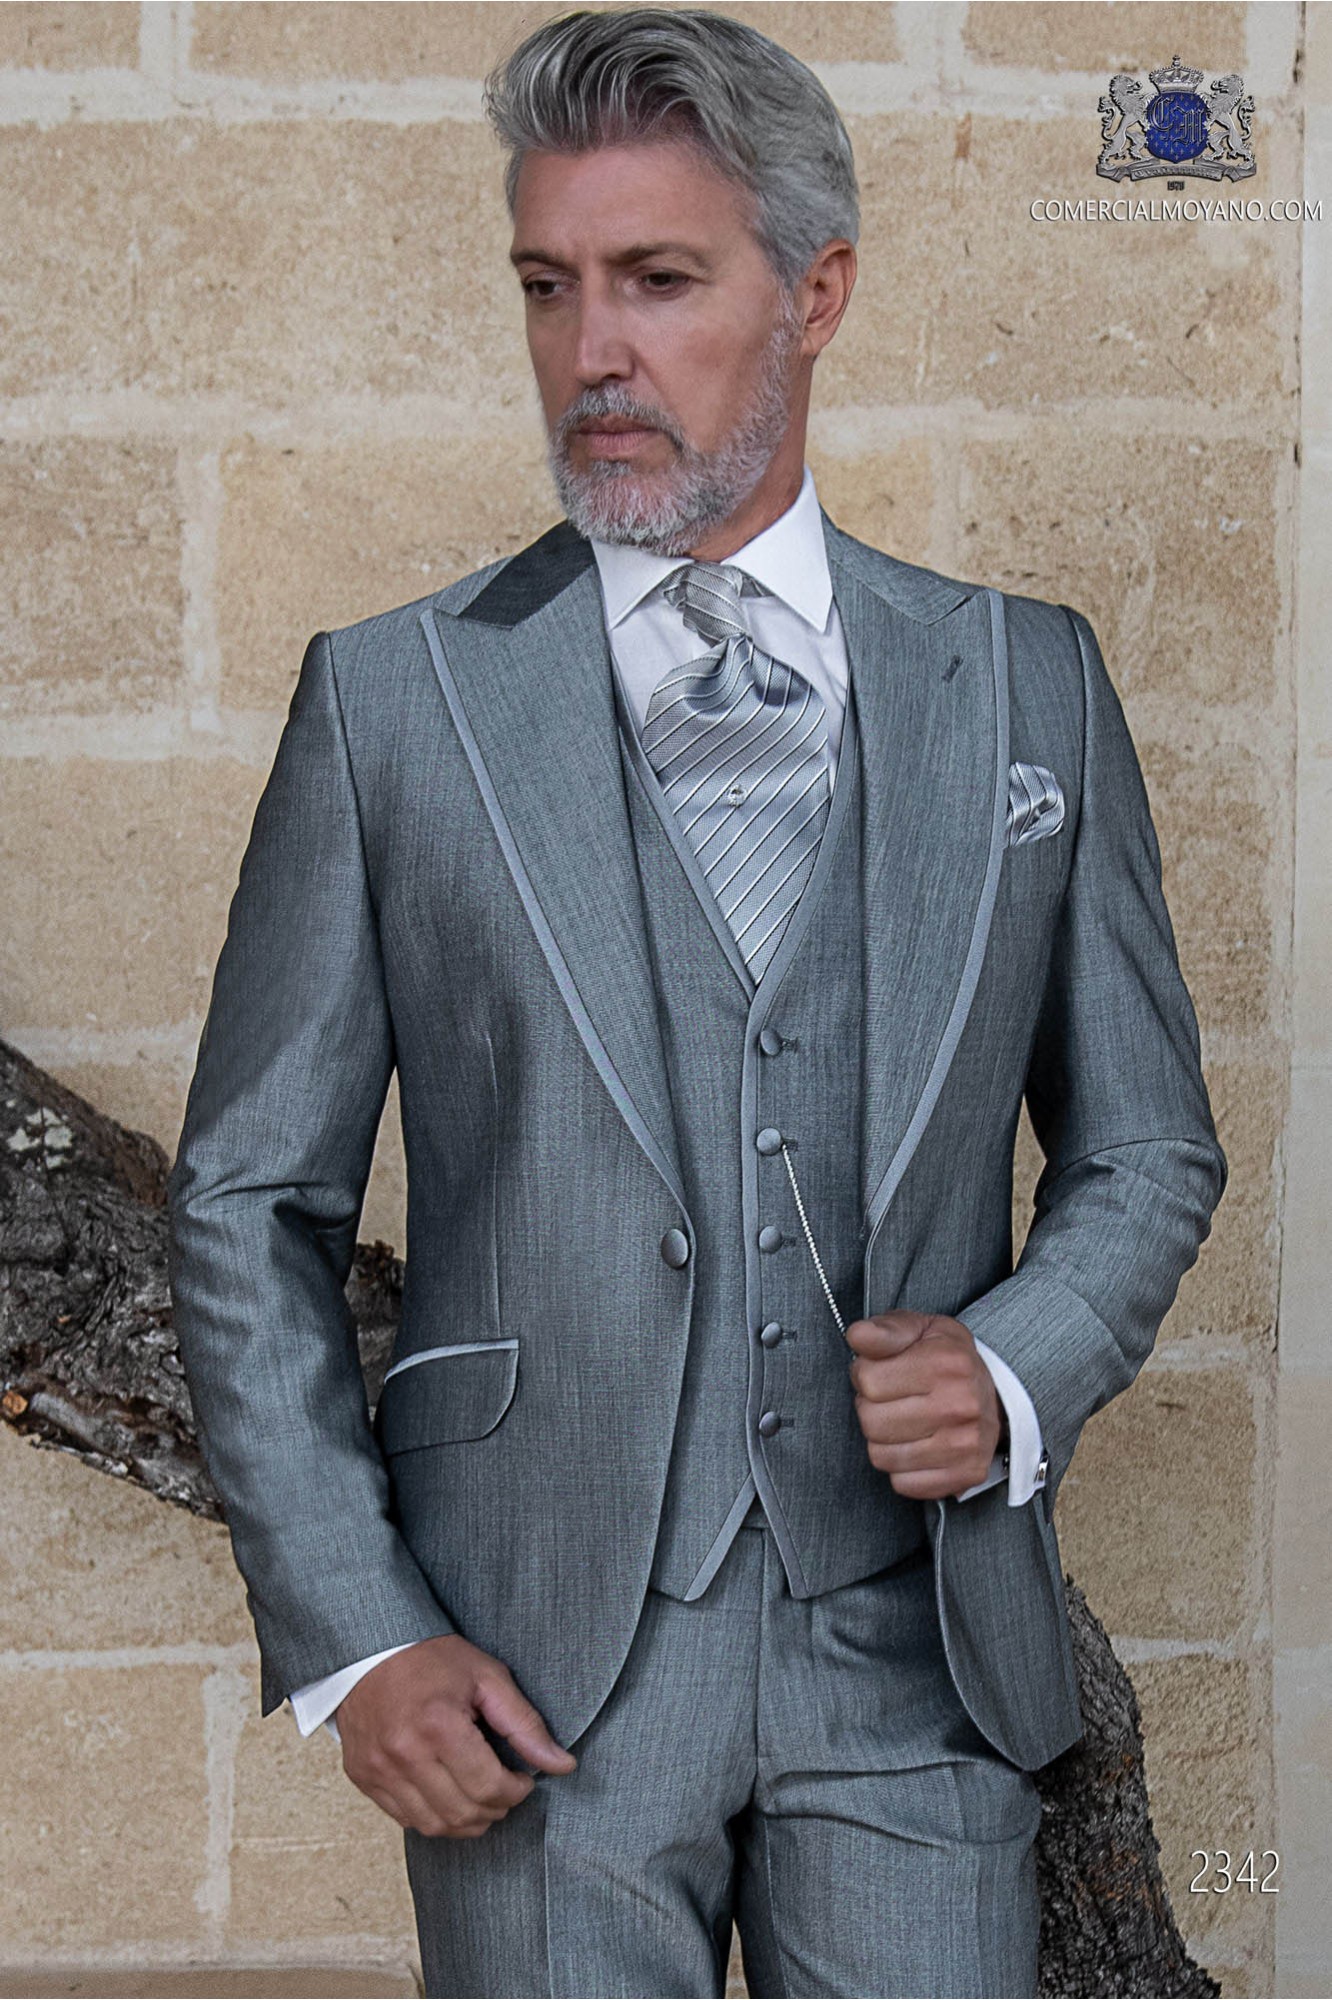 Traje de novio gris claro lana mohair alpaca modelo: 2342 Mario Moyano colección Gentleman